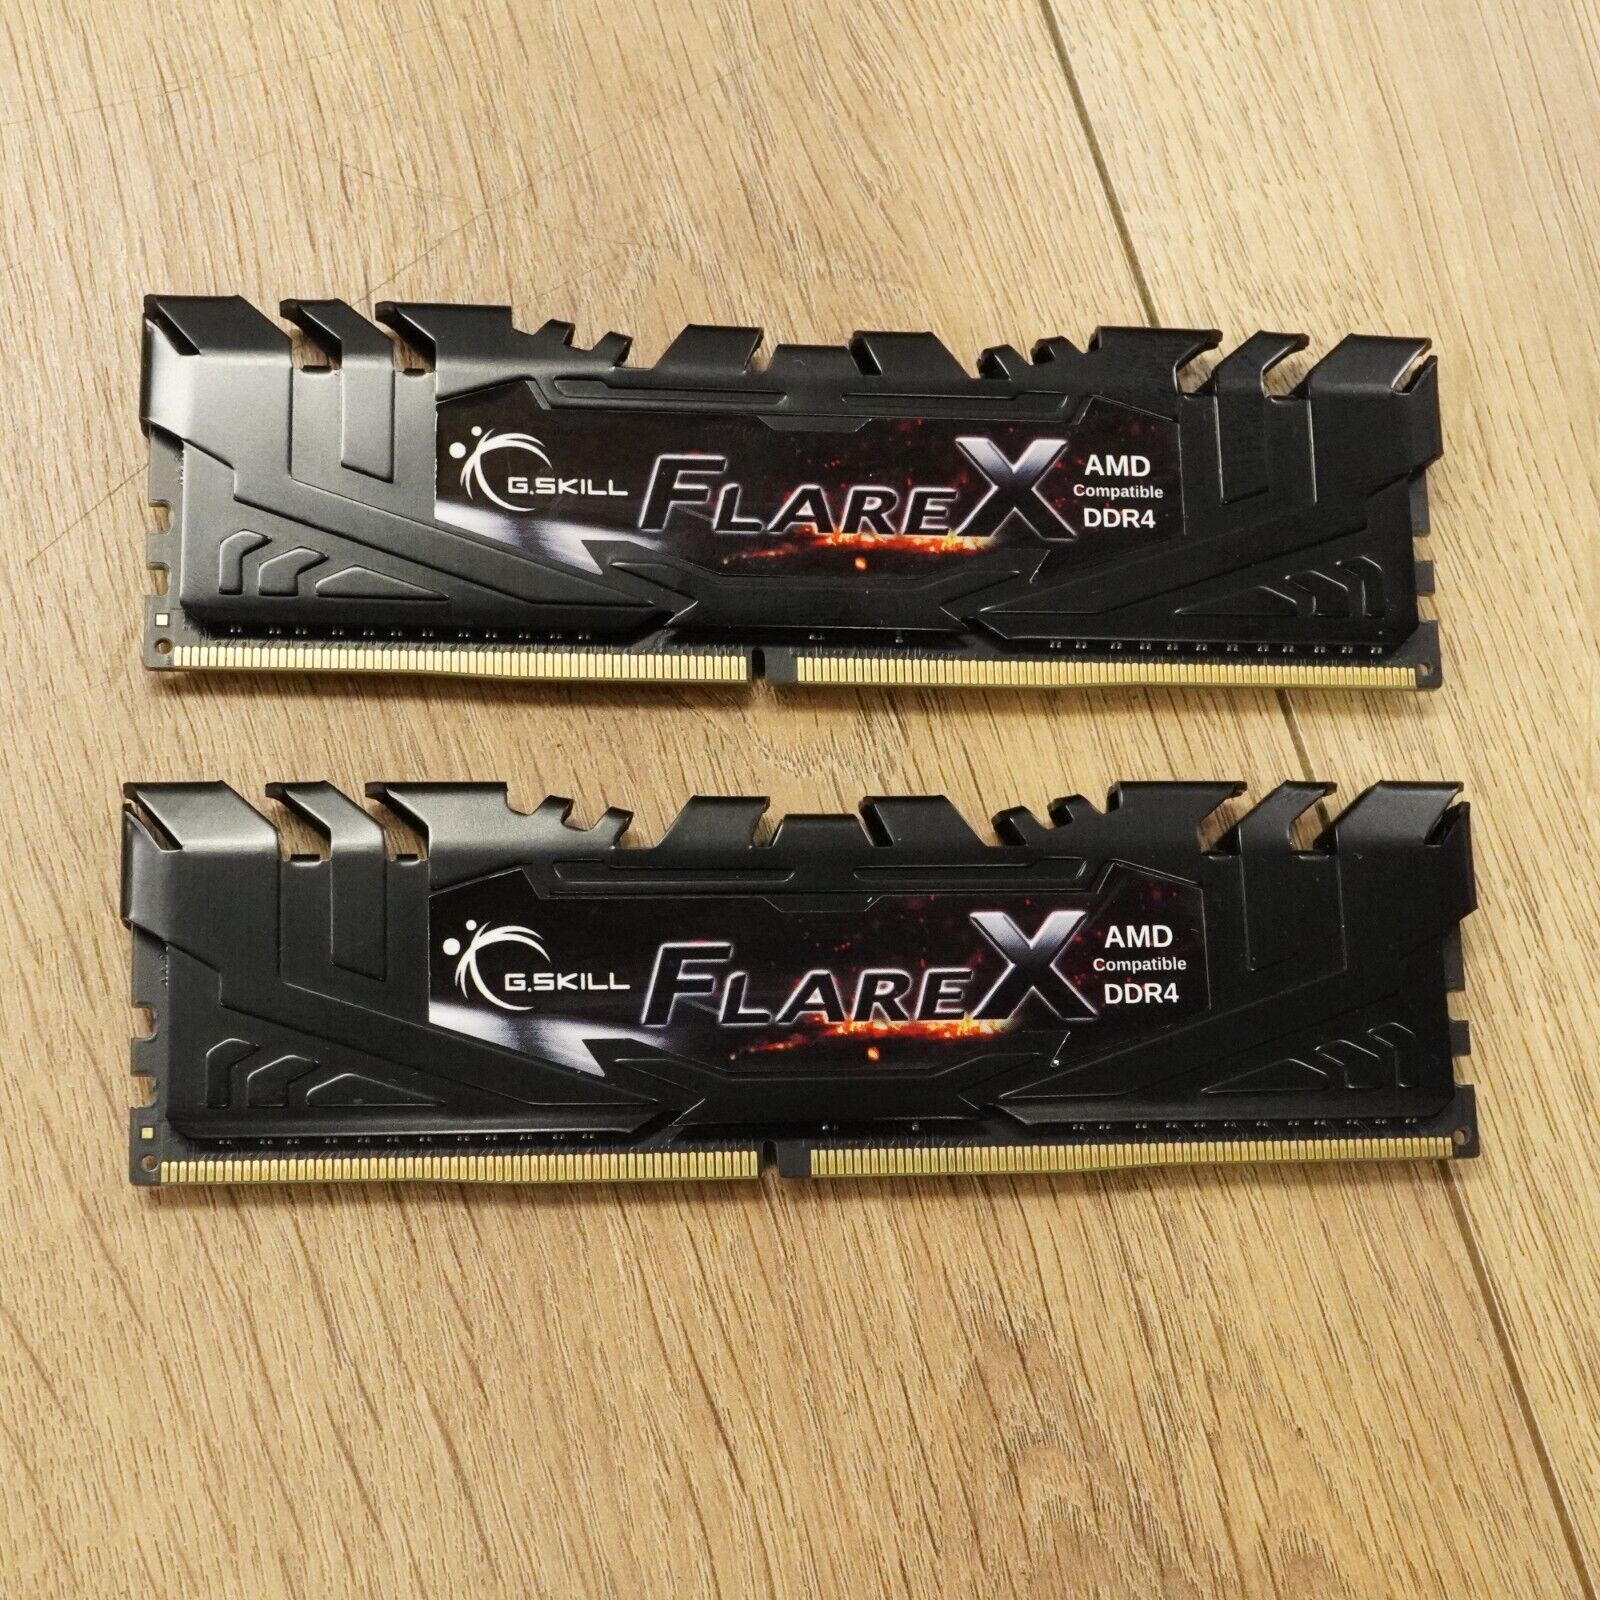 G.SKILL Flare X Series (Intel XMP) DDR4 RAM 16GB (2x8GB) 3200MT/s CL14-14-14-34